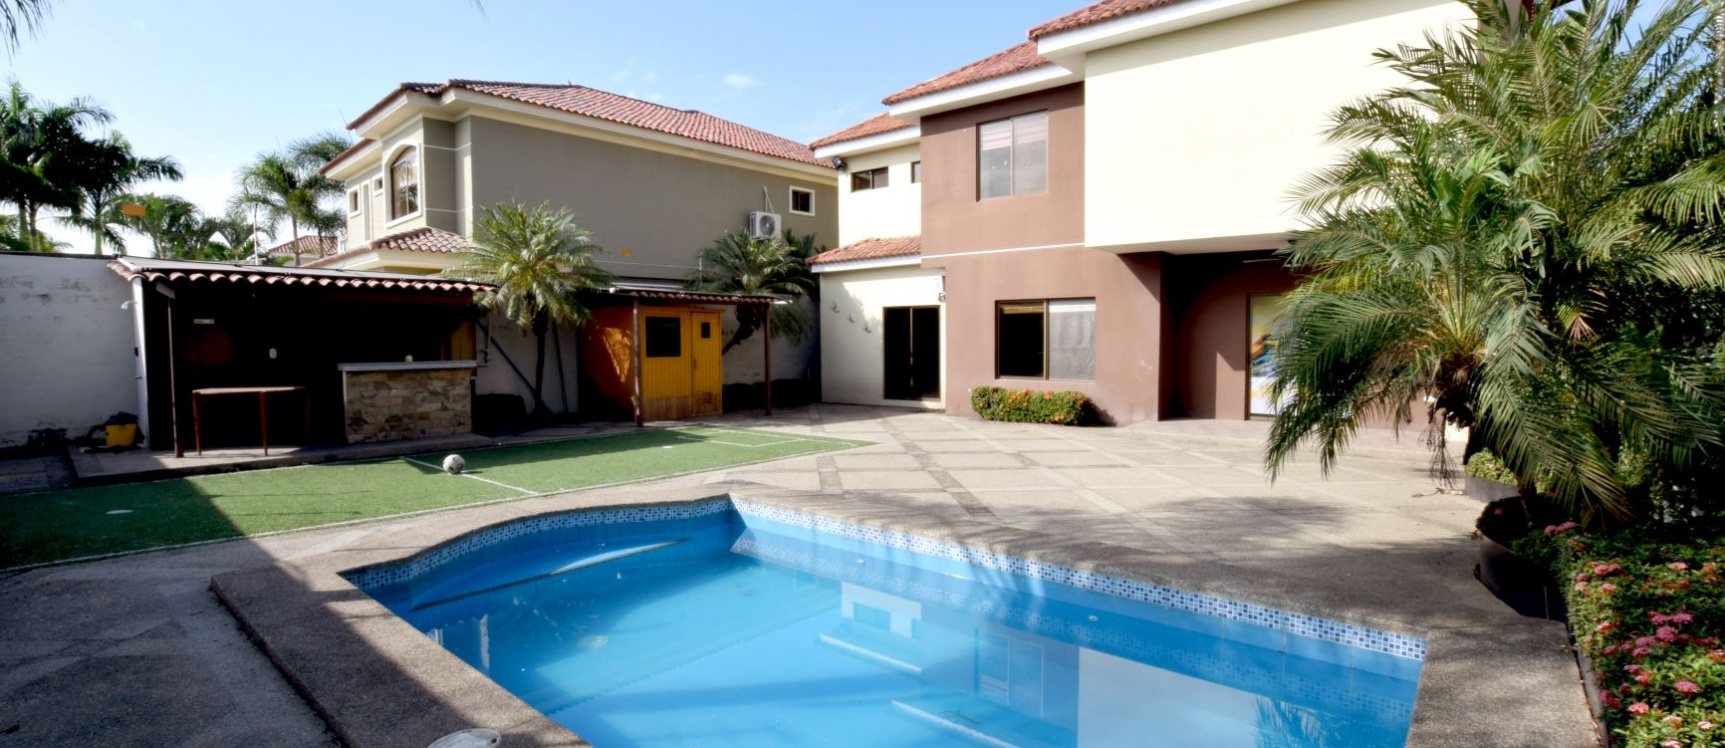 GeoBienes - Casa en venta en Laguna del Sol, Vía Samborondón - Plusvalia Guayaquil Casas de venta y alquiler Inmobiliaria Ecuador